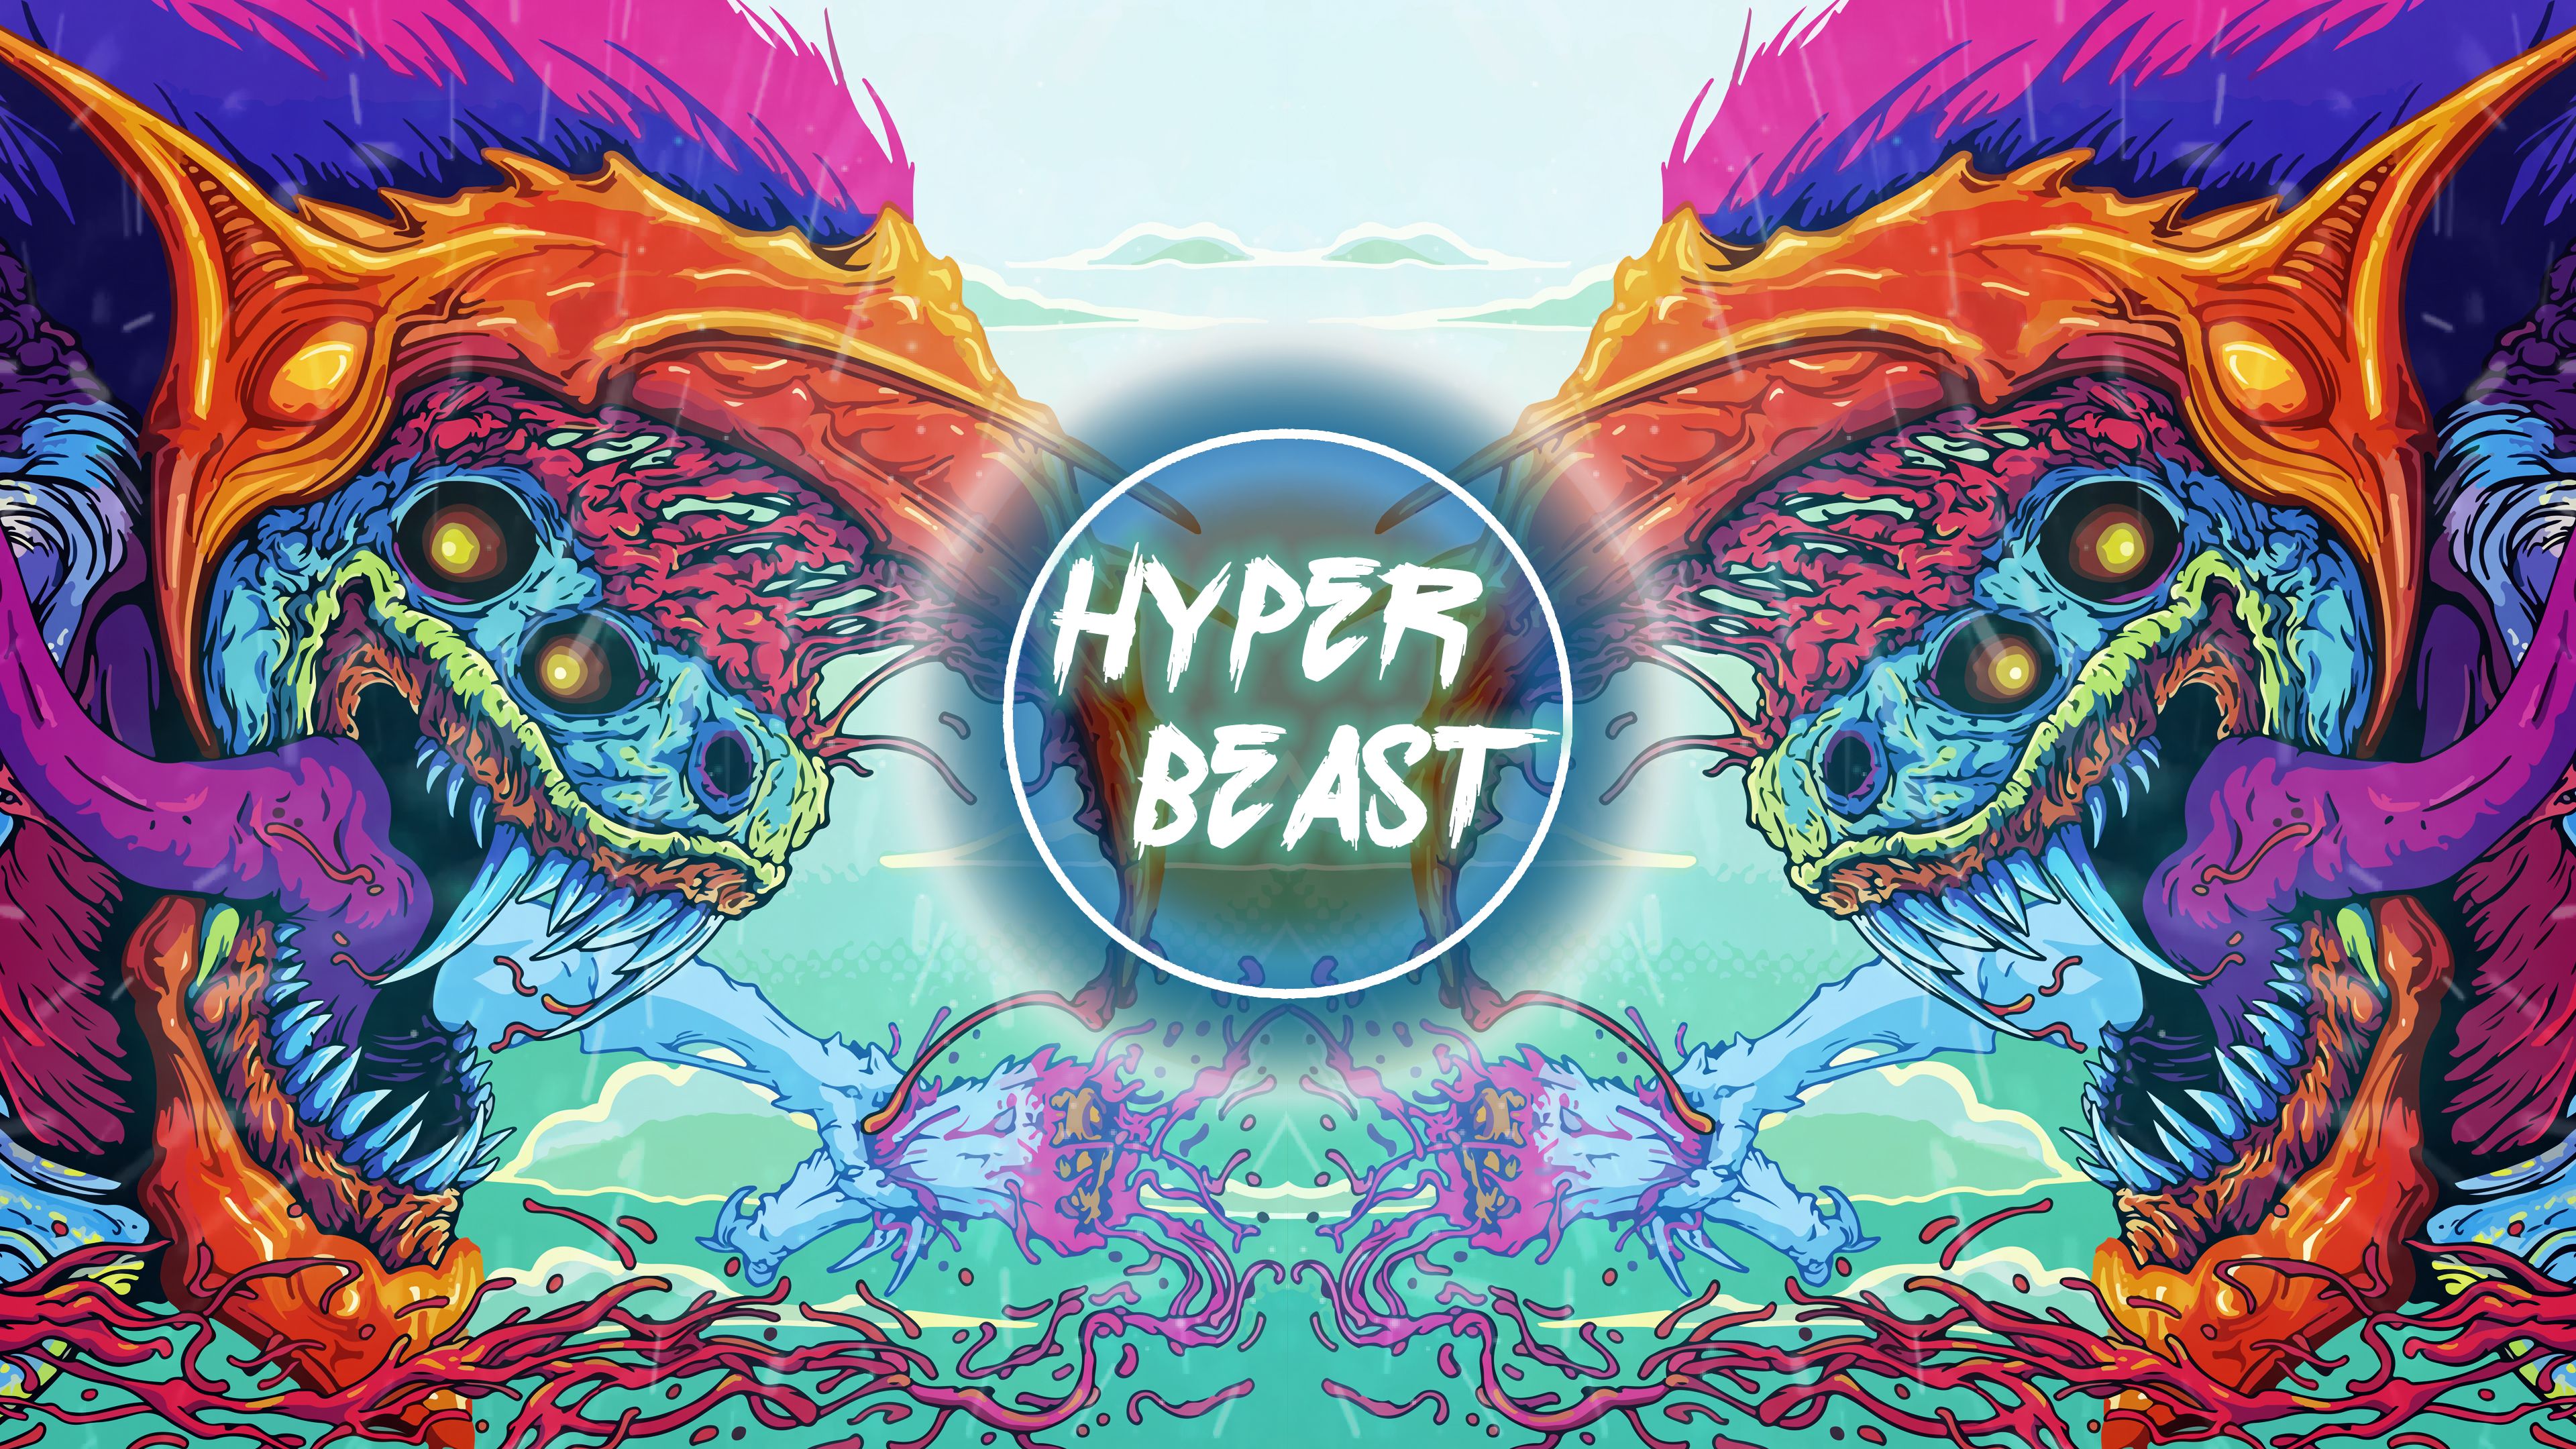 Hyper Beast Full Image Wallpapers